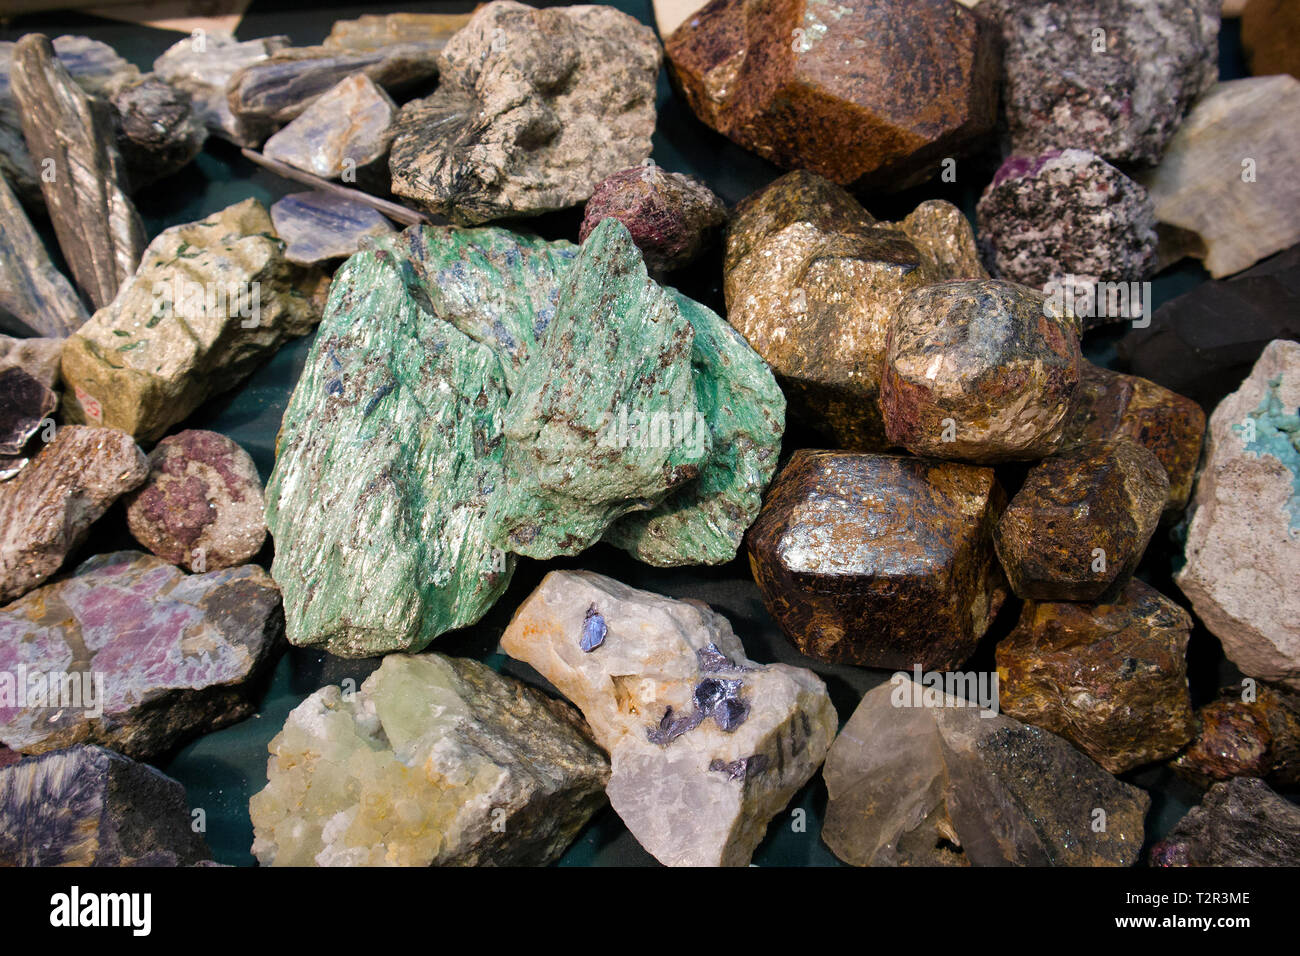 Grand morceau de malachite brute entre autres fragments de pierre à l'exposition de minéraux Banque D'Images